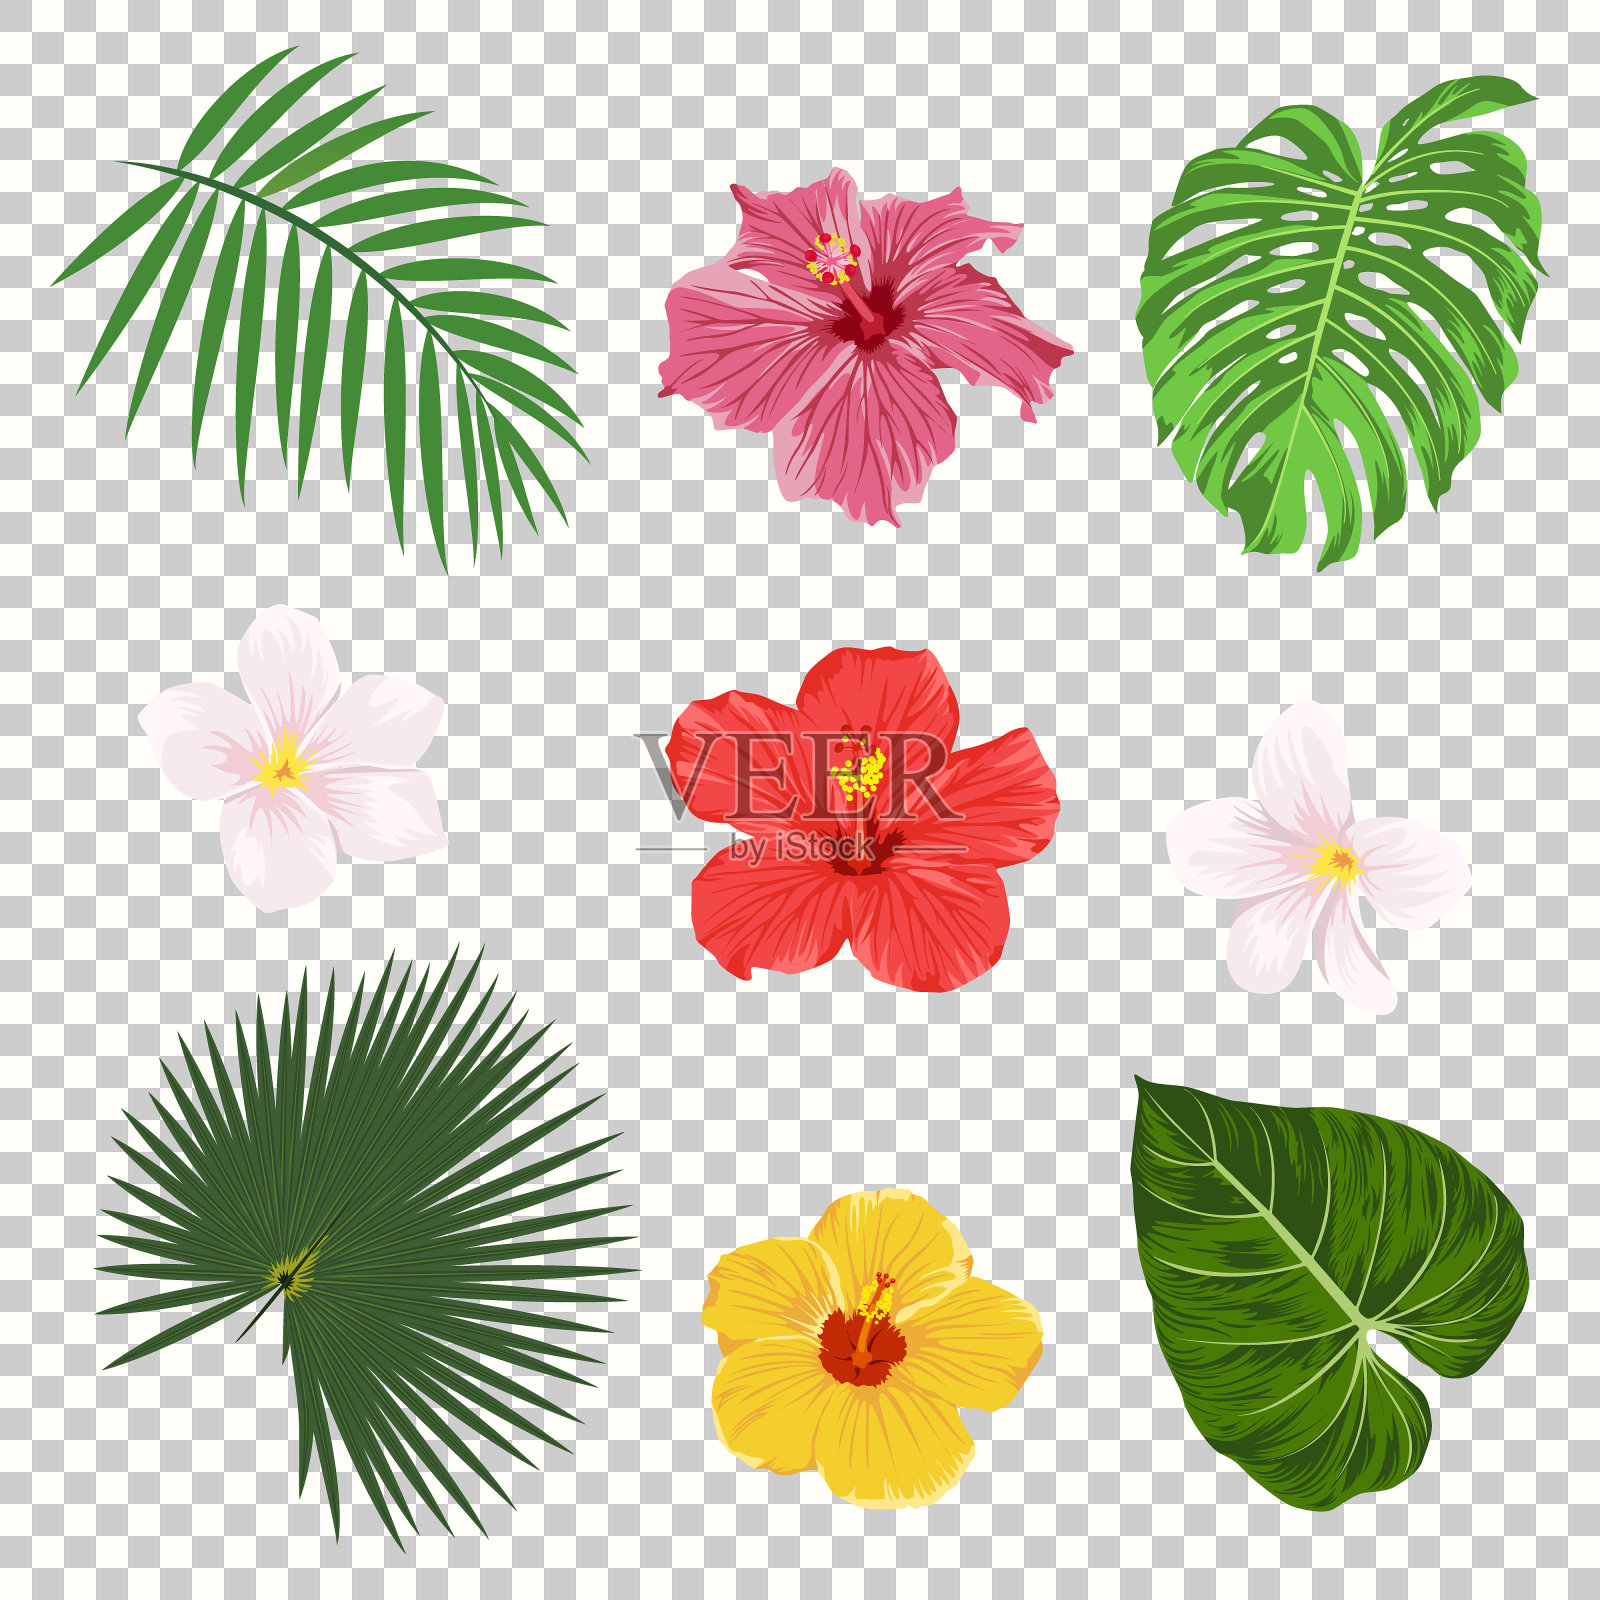 矢量热带叶子和花图标设置隔离在透明网格背景。棕榈、香蕉叶、木槿和鸡蛋花。丛林树设计模板。植物及花卉收集插画图片素材